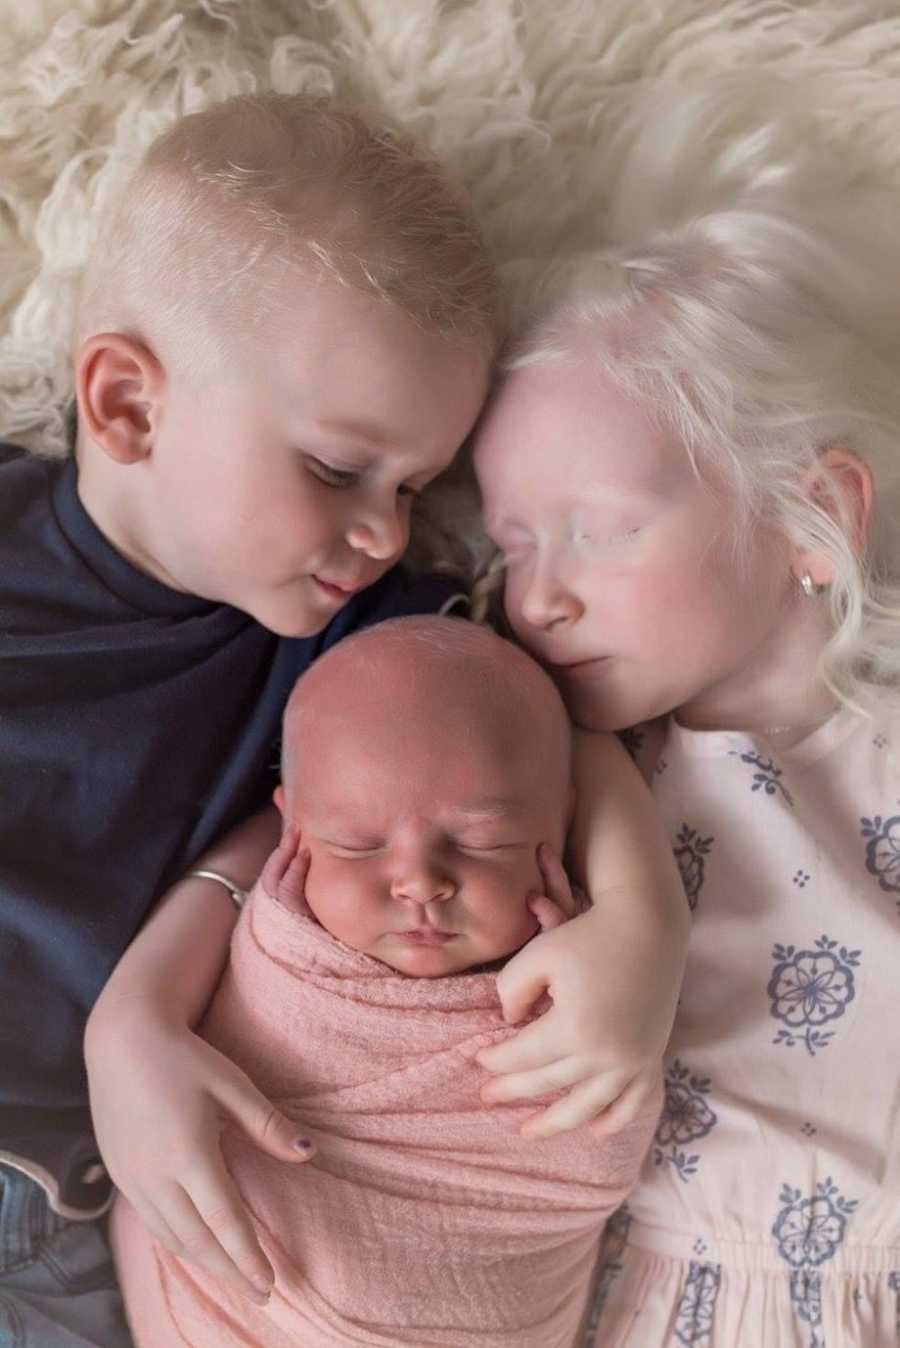 As duas irmãs foram diagnosticadas com albinismo e o irmão está fazendo investigação para diagnóstico de Transtorno do Espectro Autista (TEA) (Foto: Reprodução/Love What Matters)